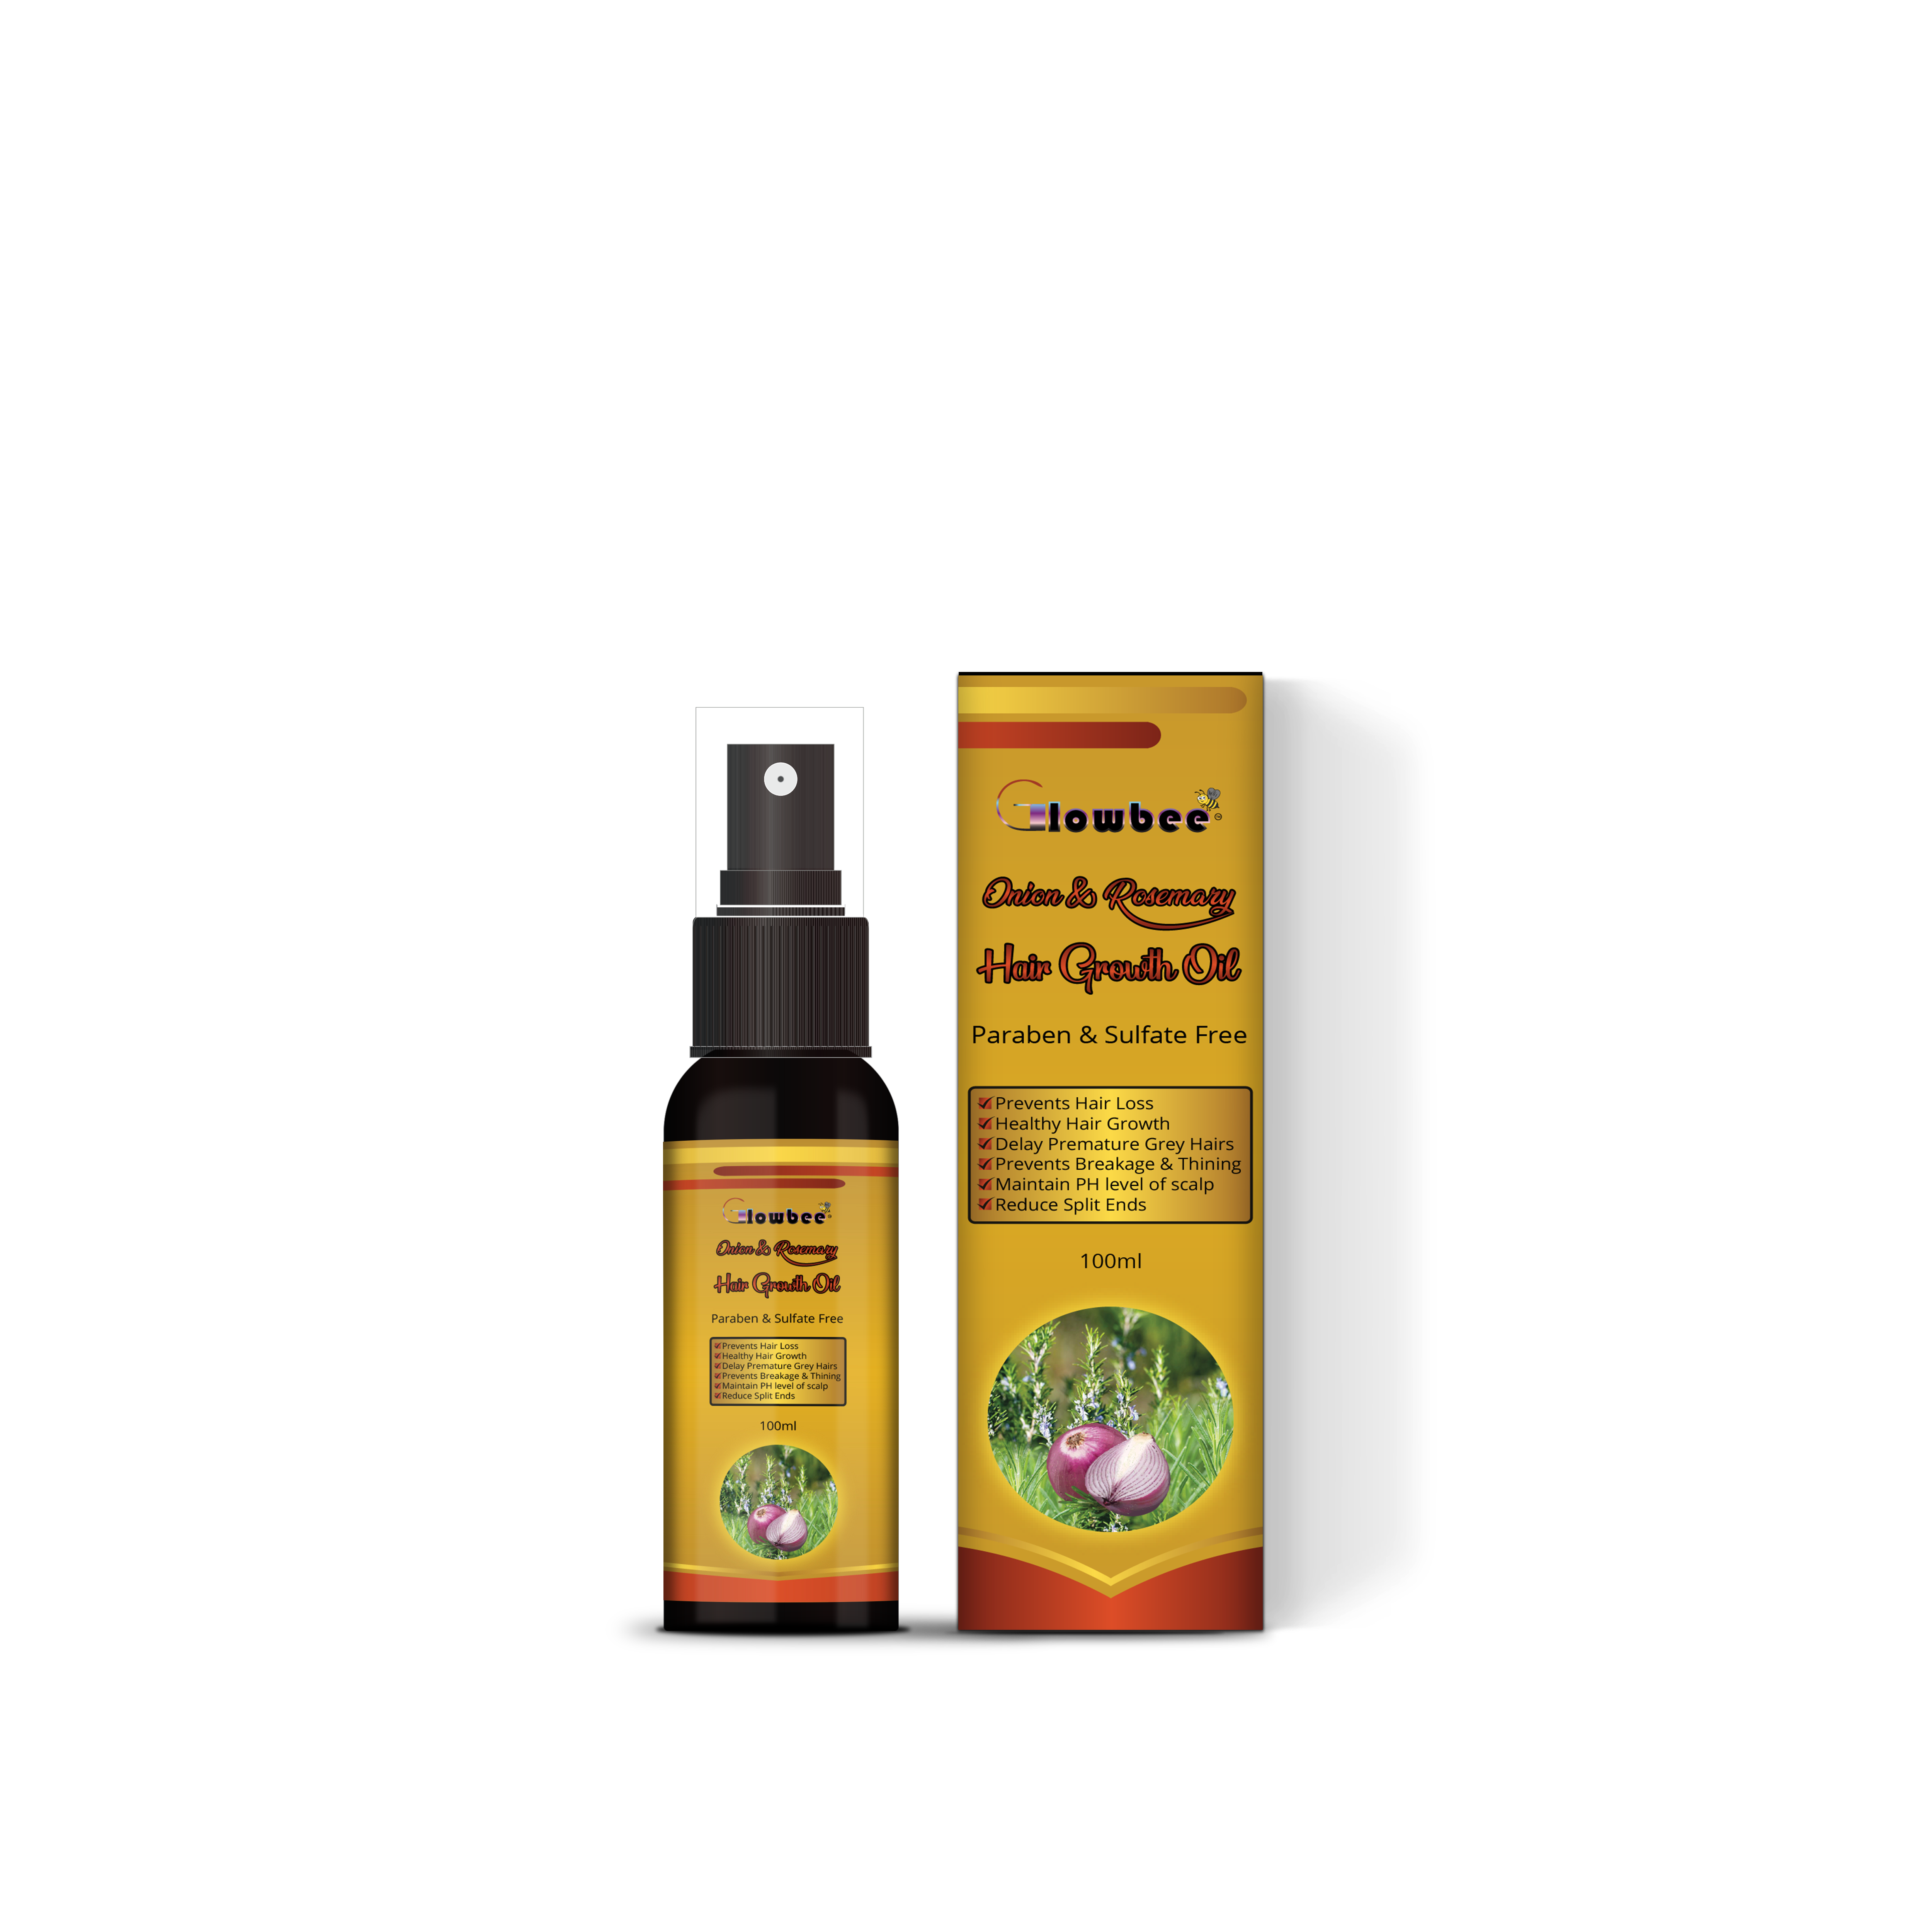 Glowbee Rosmary & Onion Hair Growth Oil Spray/100ml